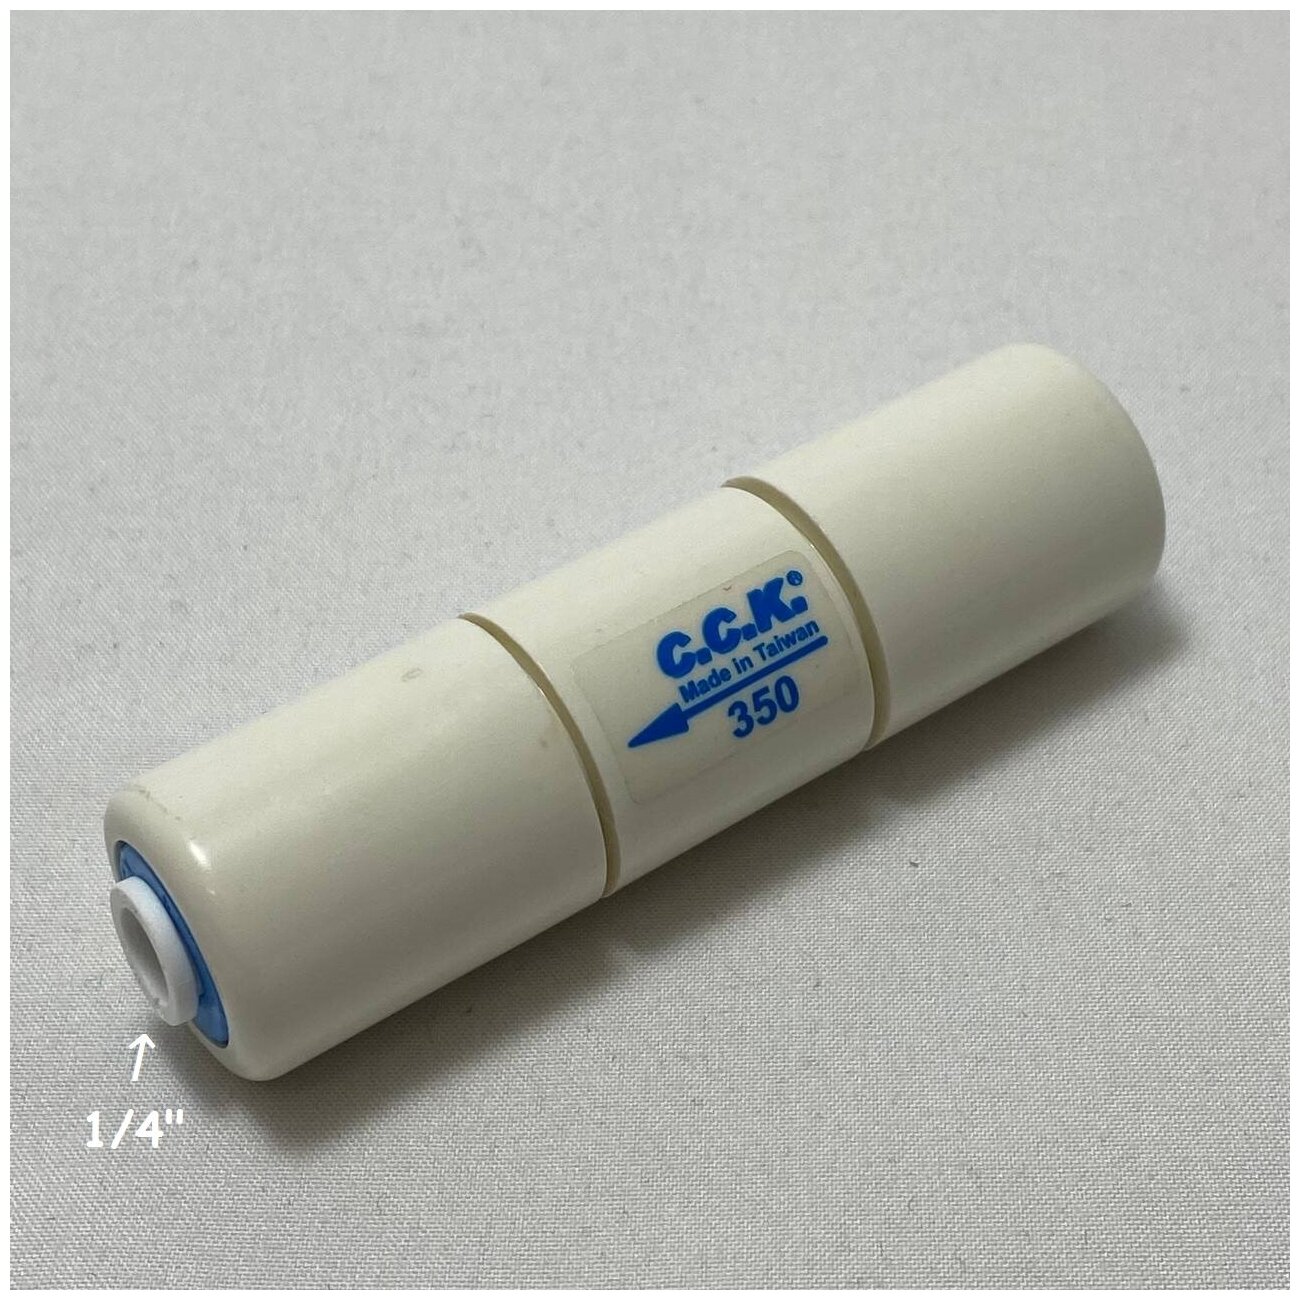 Ограничитель потока 350 мл/мин / Контроллер дренажа для фильтра (1/4" трубка) из усиленного пластика C.C.K.